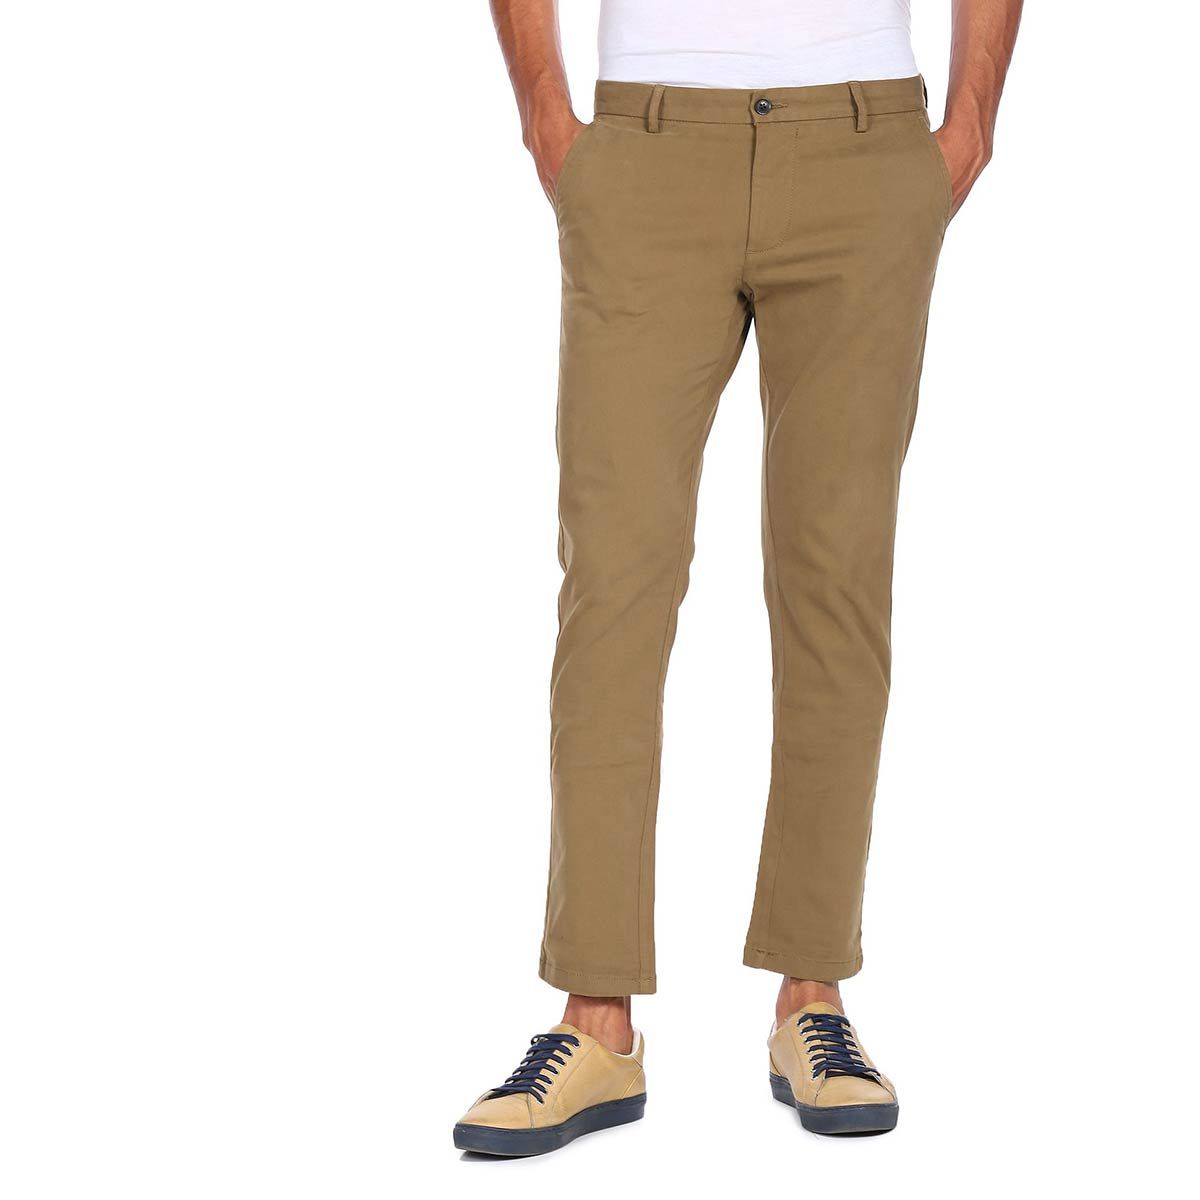 Buy Grey Trousers  Pants for Men by Arrow Sports Online  Ajiocom